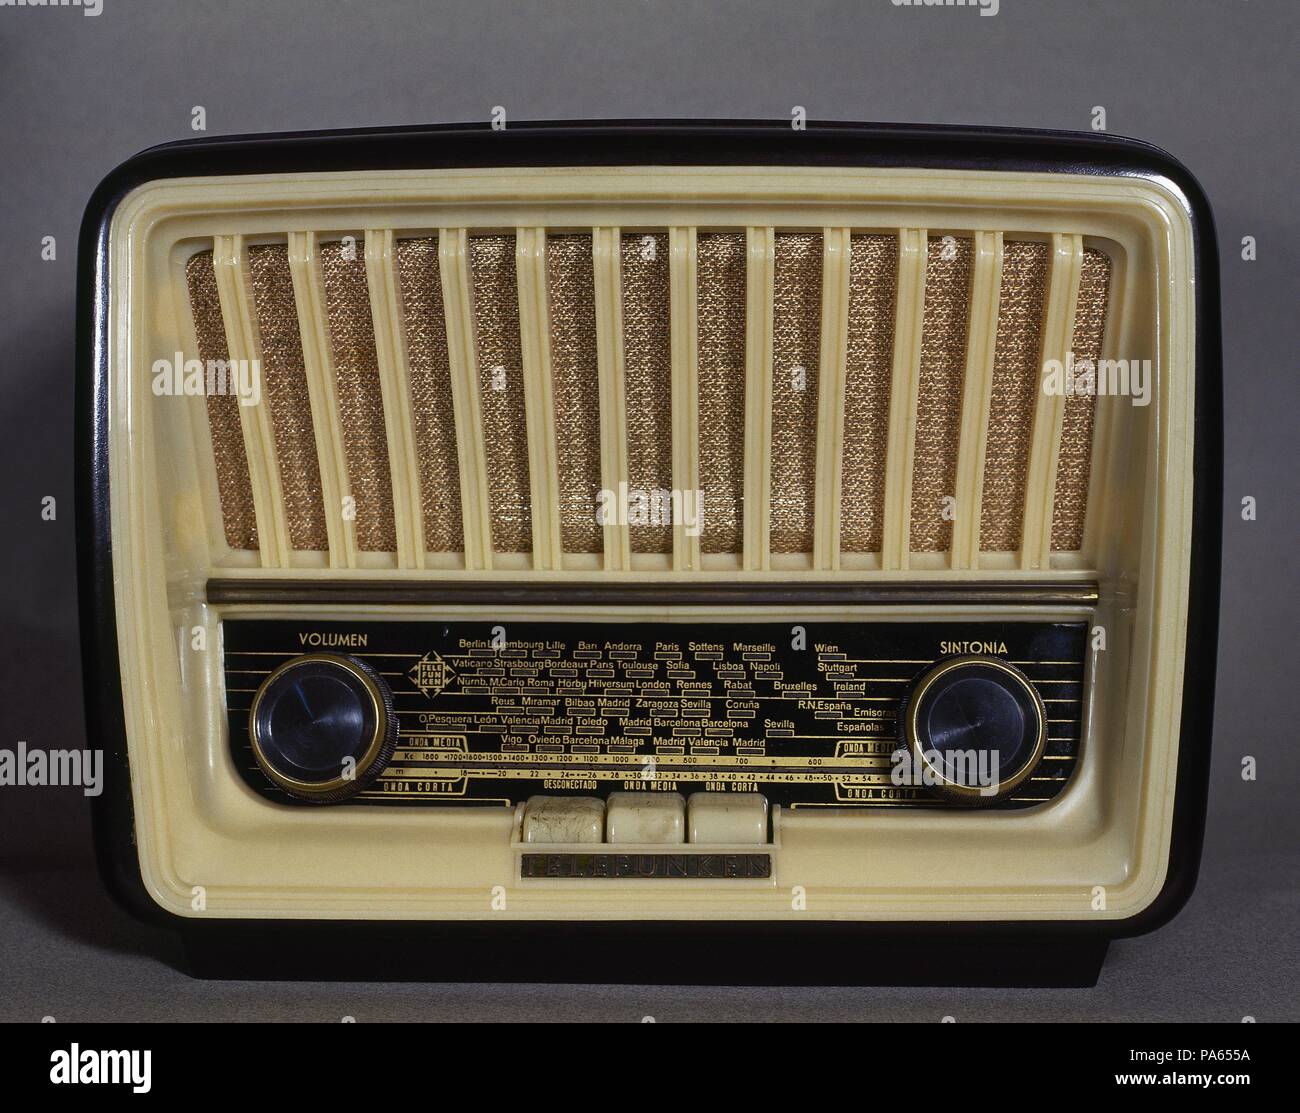 Ville de récepteur radio de la marque Telefunken, modelo 'Capricho',  versión U-1815. Onda corta y media. Año 1958 Photo Stock - Alamy